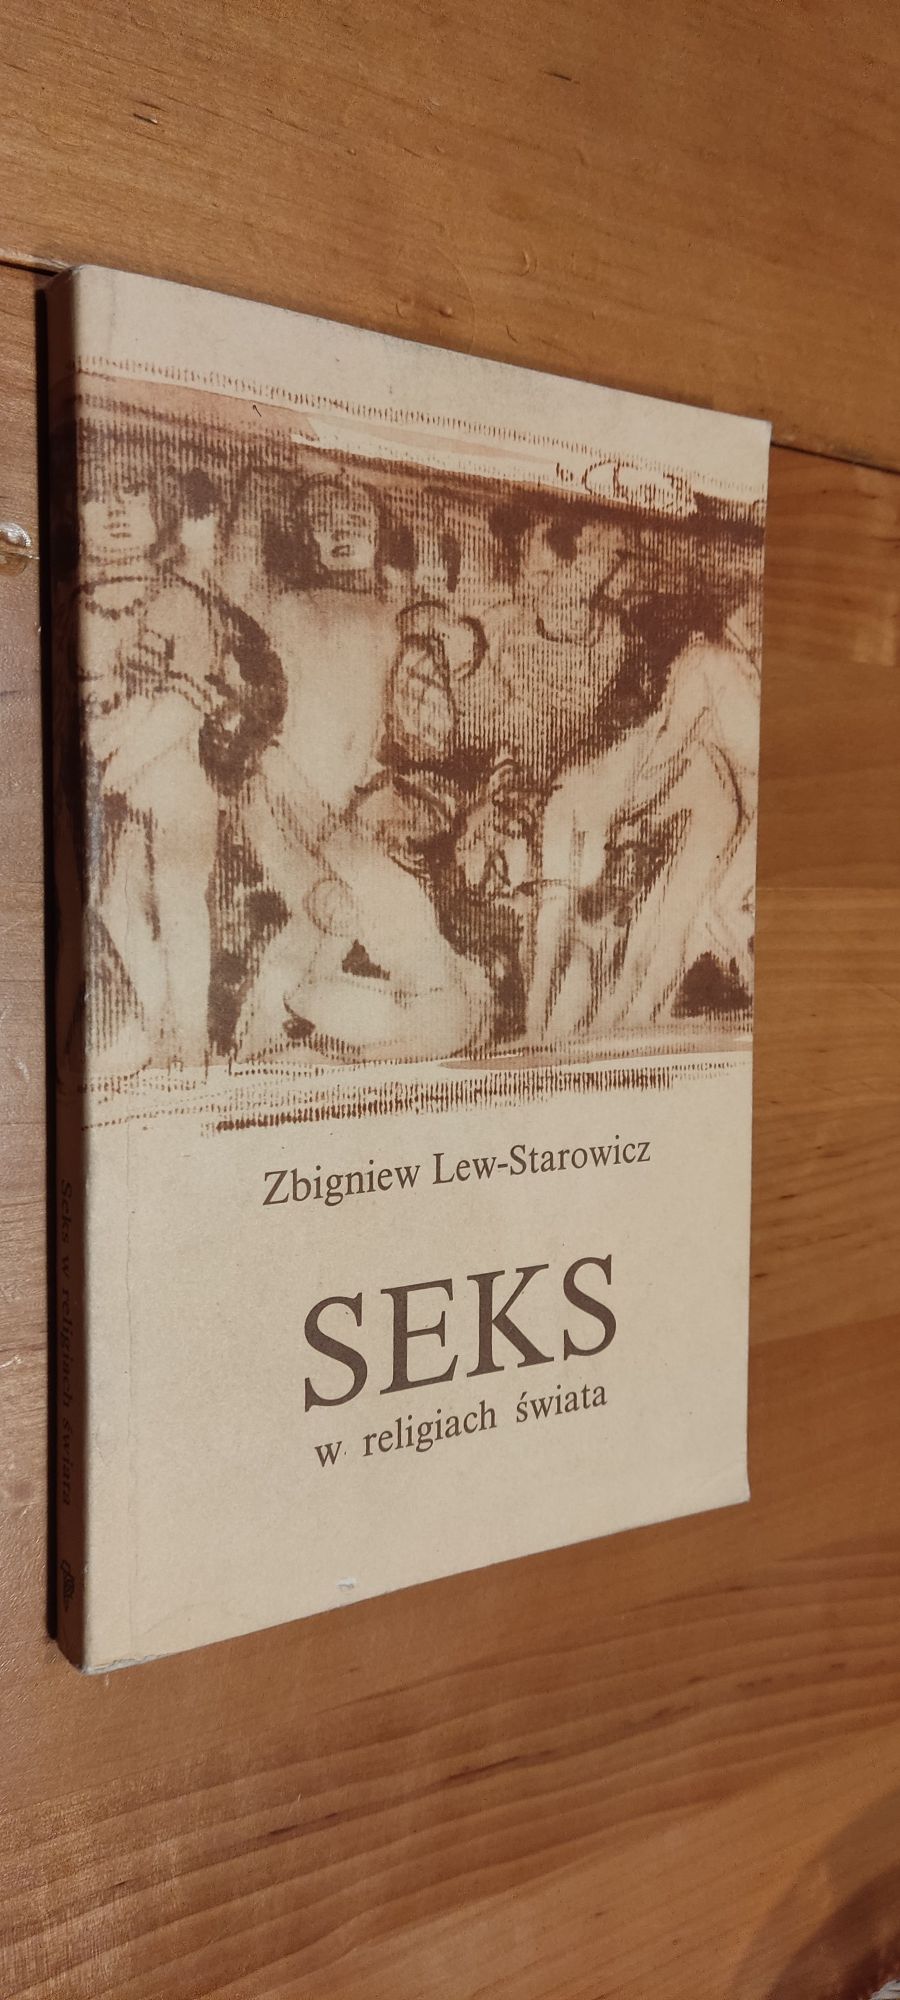 Seks w religiach świata Zbigniew Lew-Starowicz